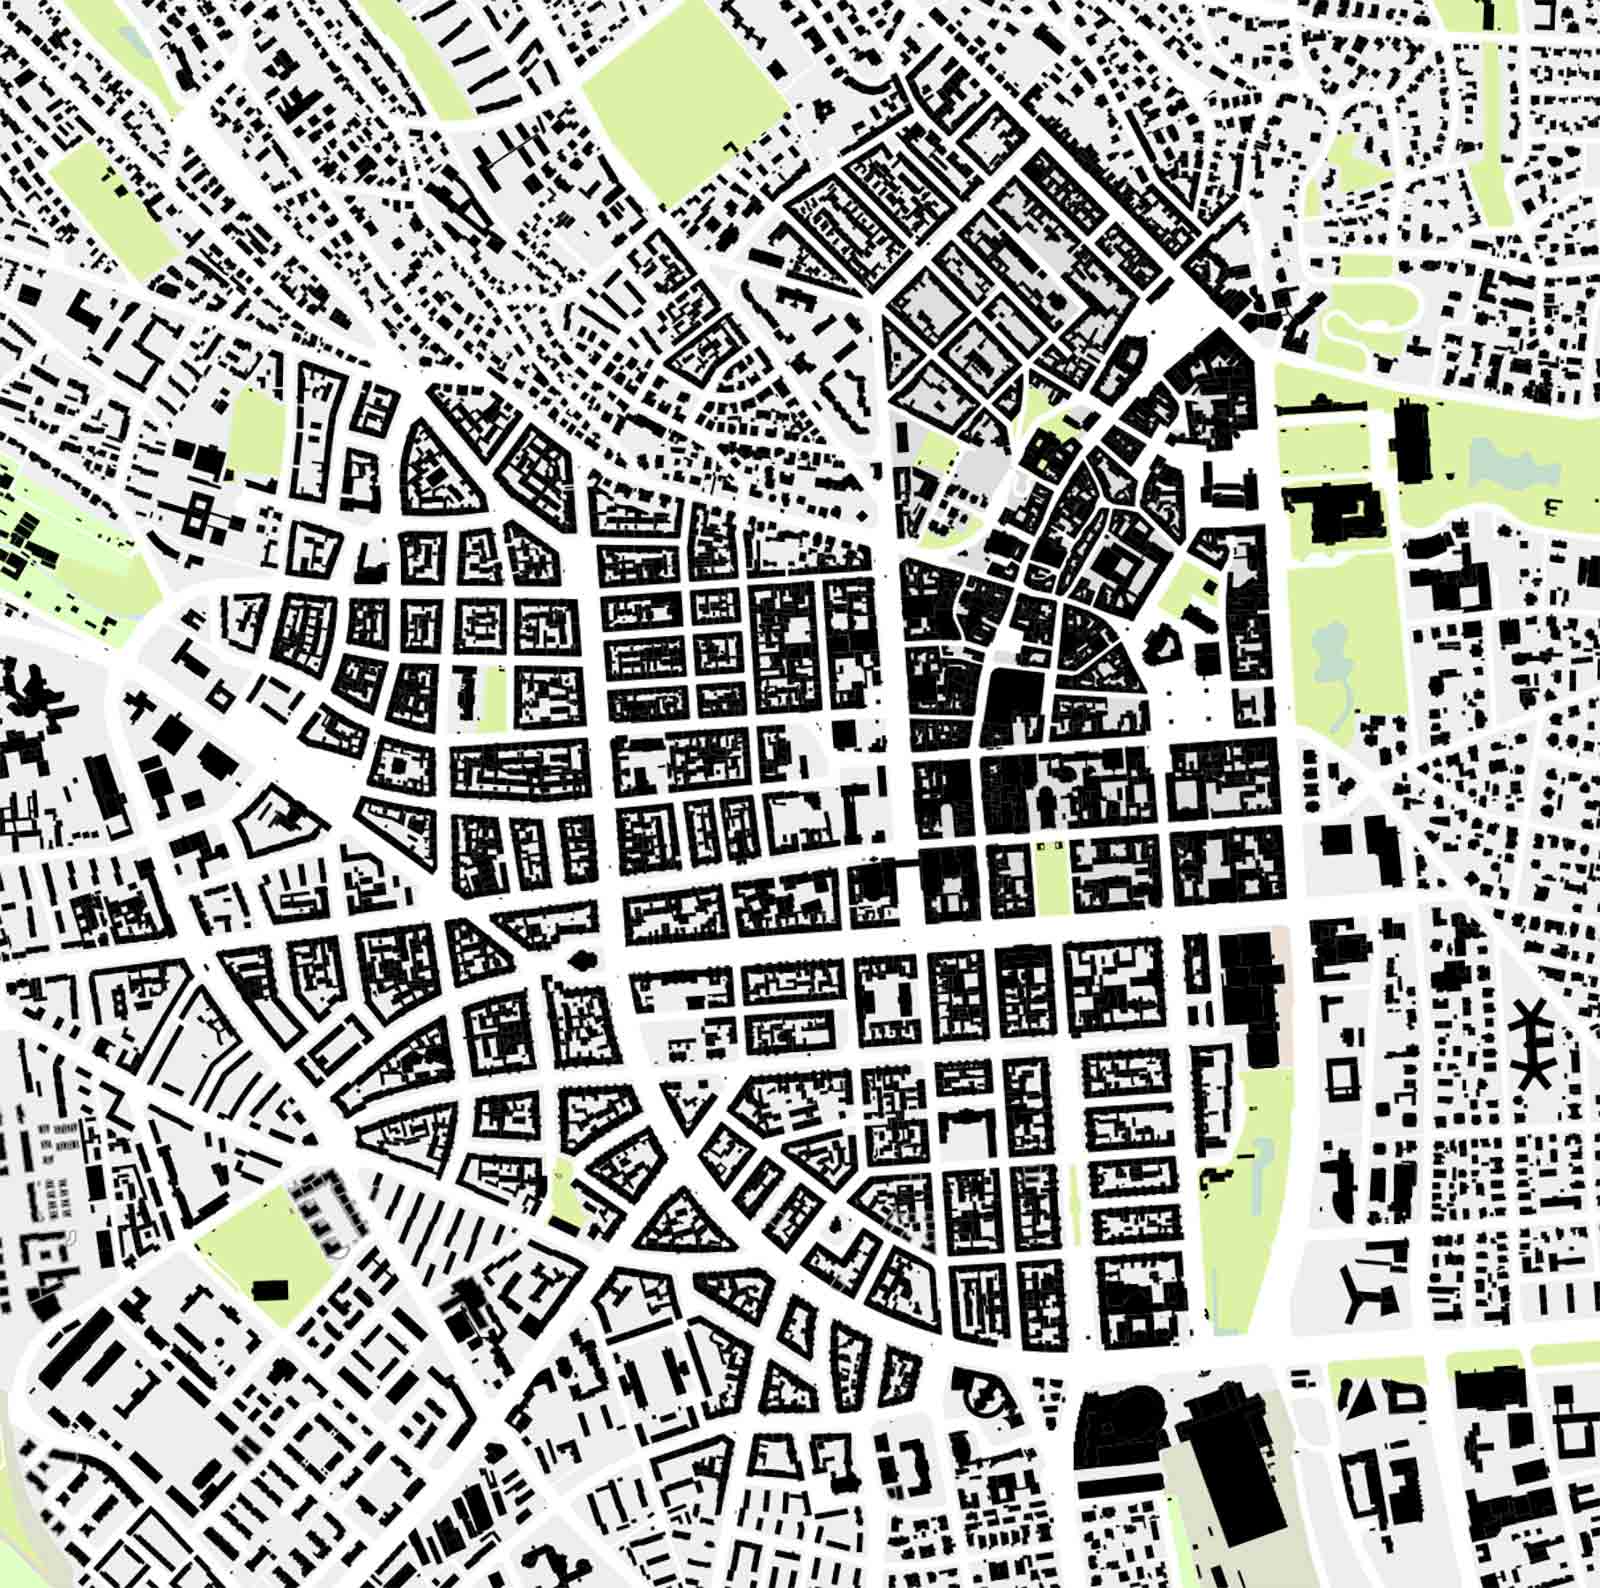 DASL Fachtagung am 10.05. in Wiesbaden: Torsten Becker zum Thema „Stadtgrundriss und Stadtraum im zeitgenössischen Städtebau – Erleben wir eine Renaissance gründerzeitlicher Strukturen?“